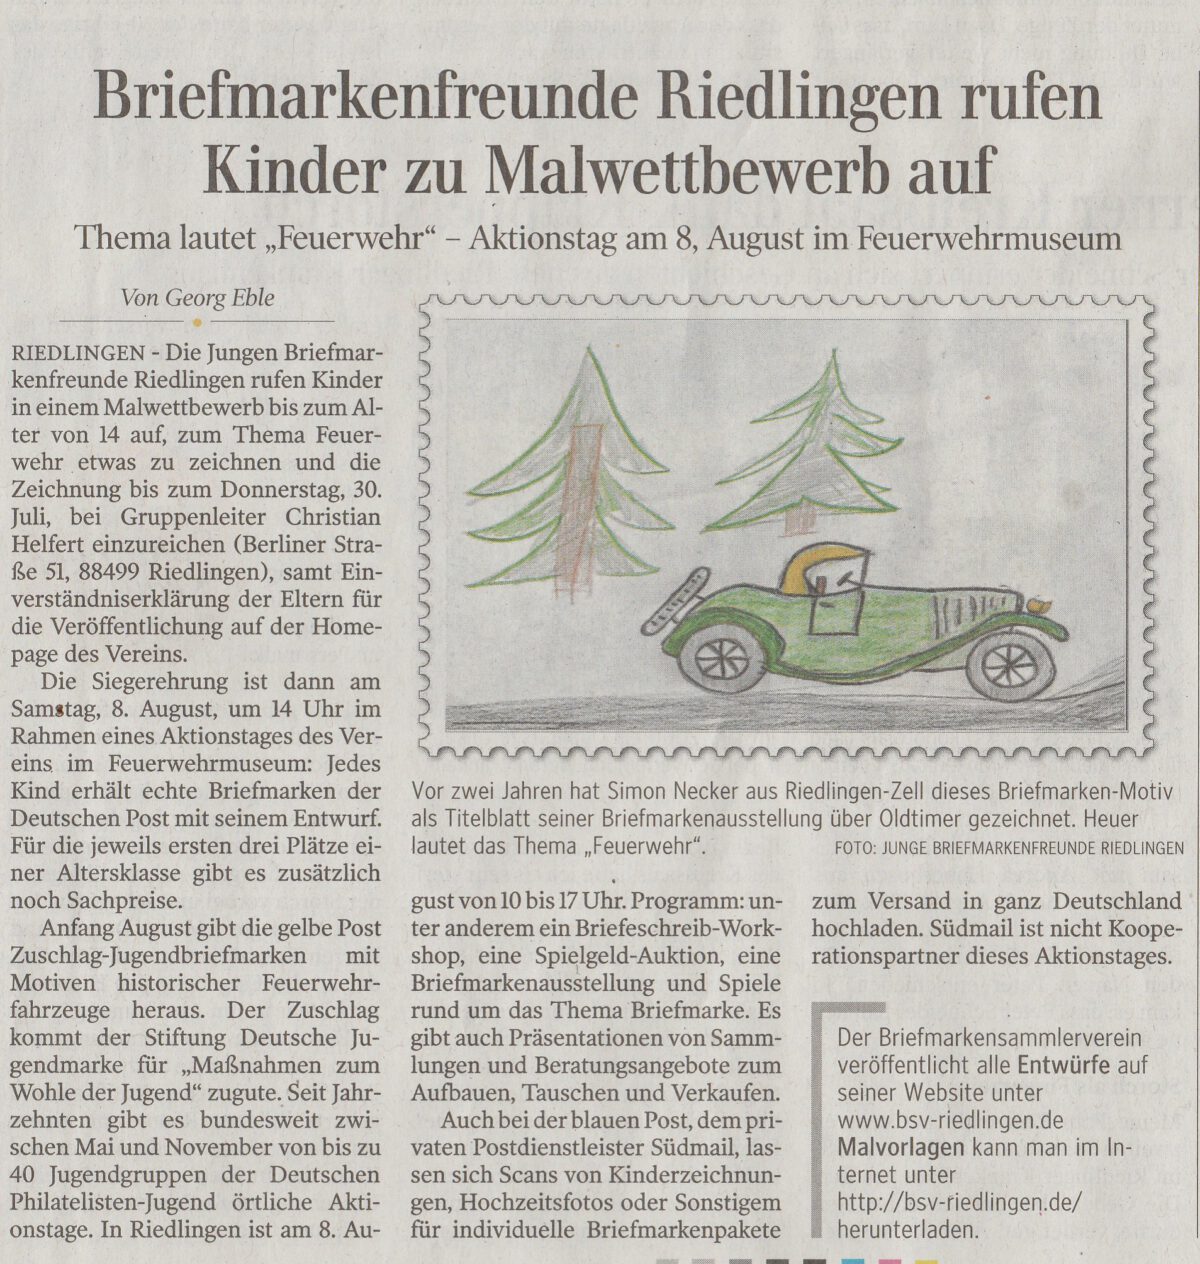 Schwäbische Zeitung vom 17.07.2020 – Briefmarkenfreunde Riedlingen rufen Kinder zu Malwettbewerb auf